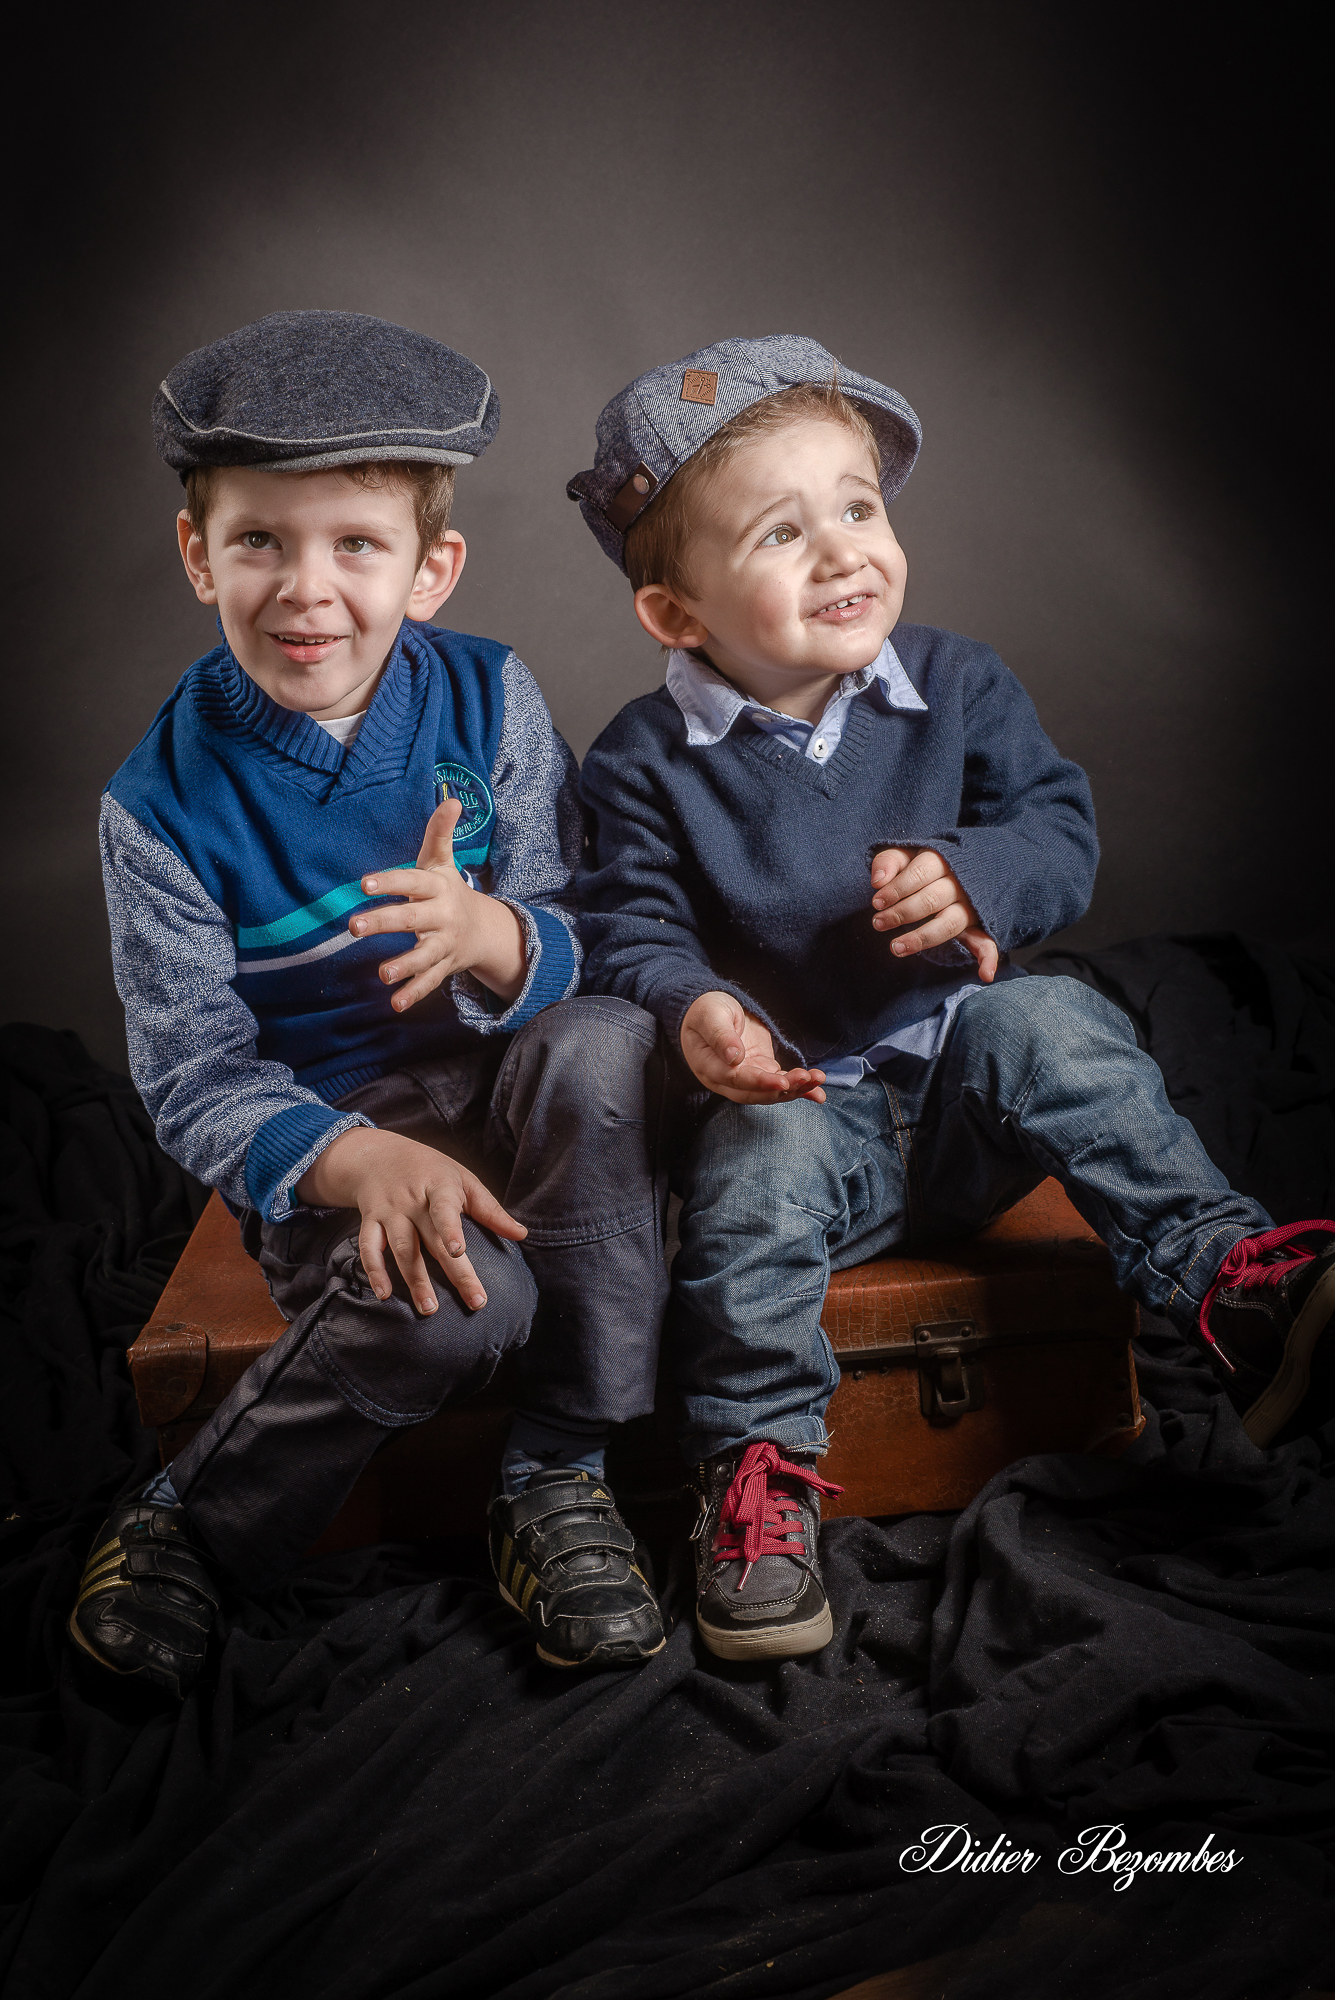 photos-en-couleur-faite-en-studio-de-deux-enfants-avec-des-casquettes